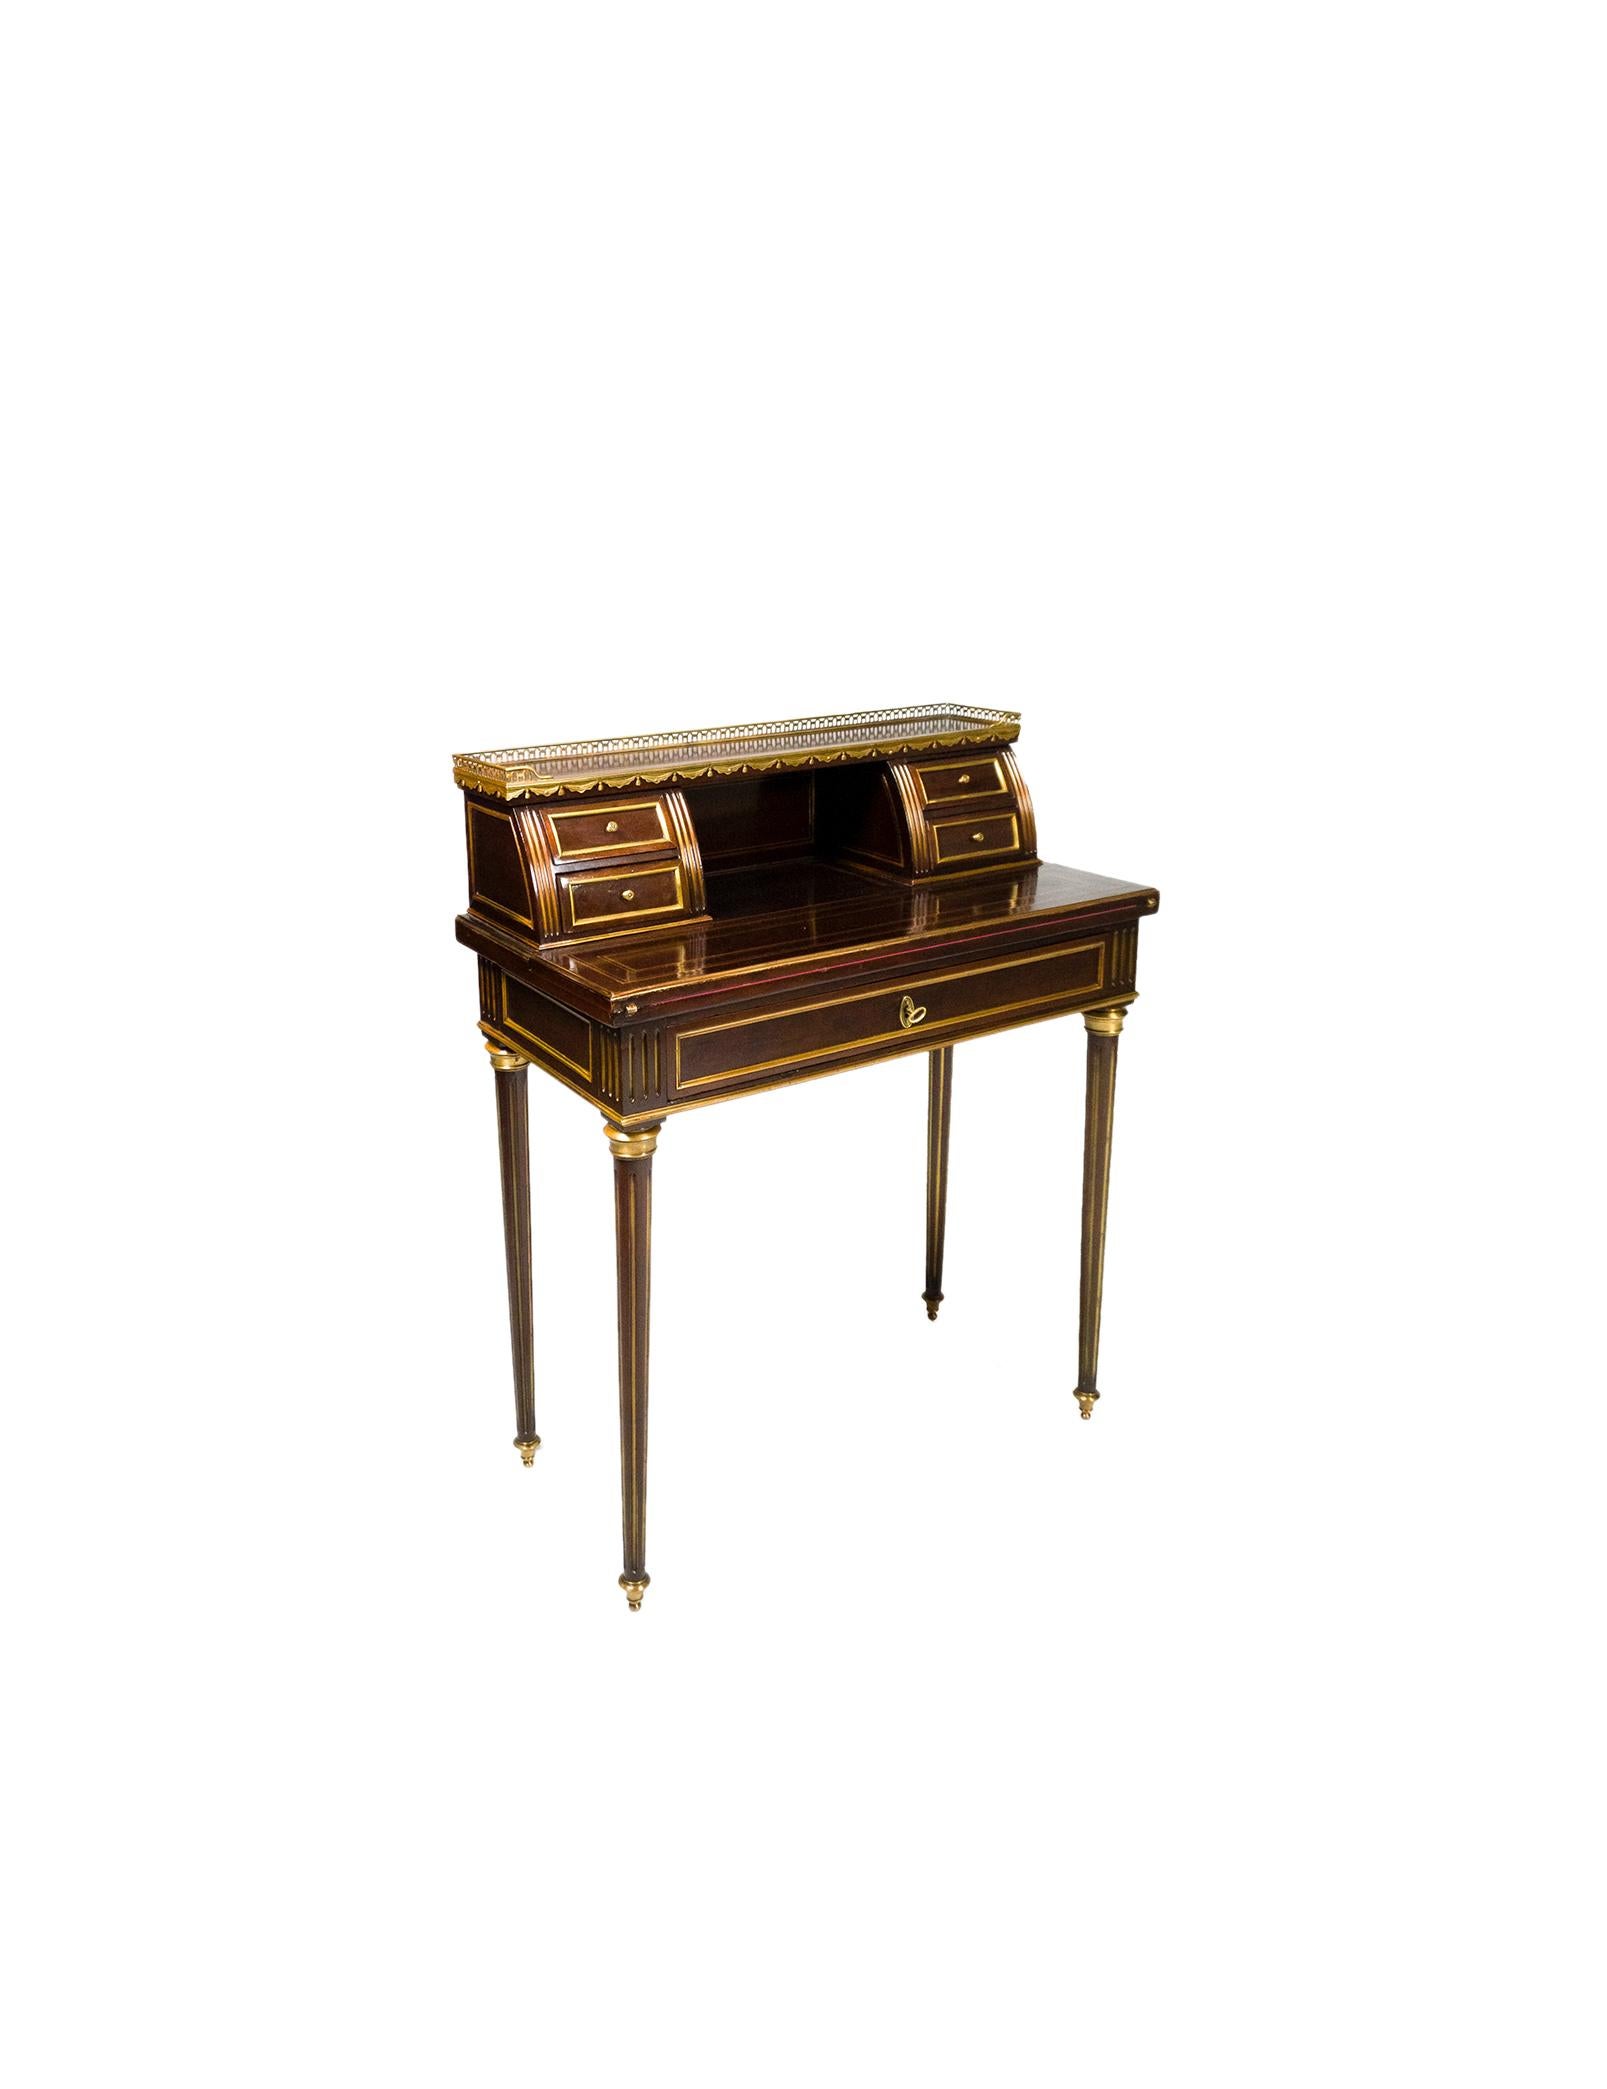 Ungewöhnlicher Napoleon-III-Schreibtisch Bonheur Du Jour aus dem 19. Jahrhundert aus Holz mit gelben Metallfeilen, einer matten Platte, einer Platte mit goldenen Metallschienen, vier kleinen Schubladen und einer breiten unteren Schublade mit einer